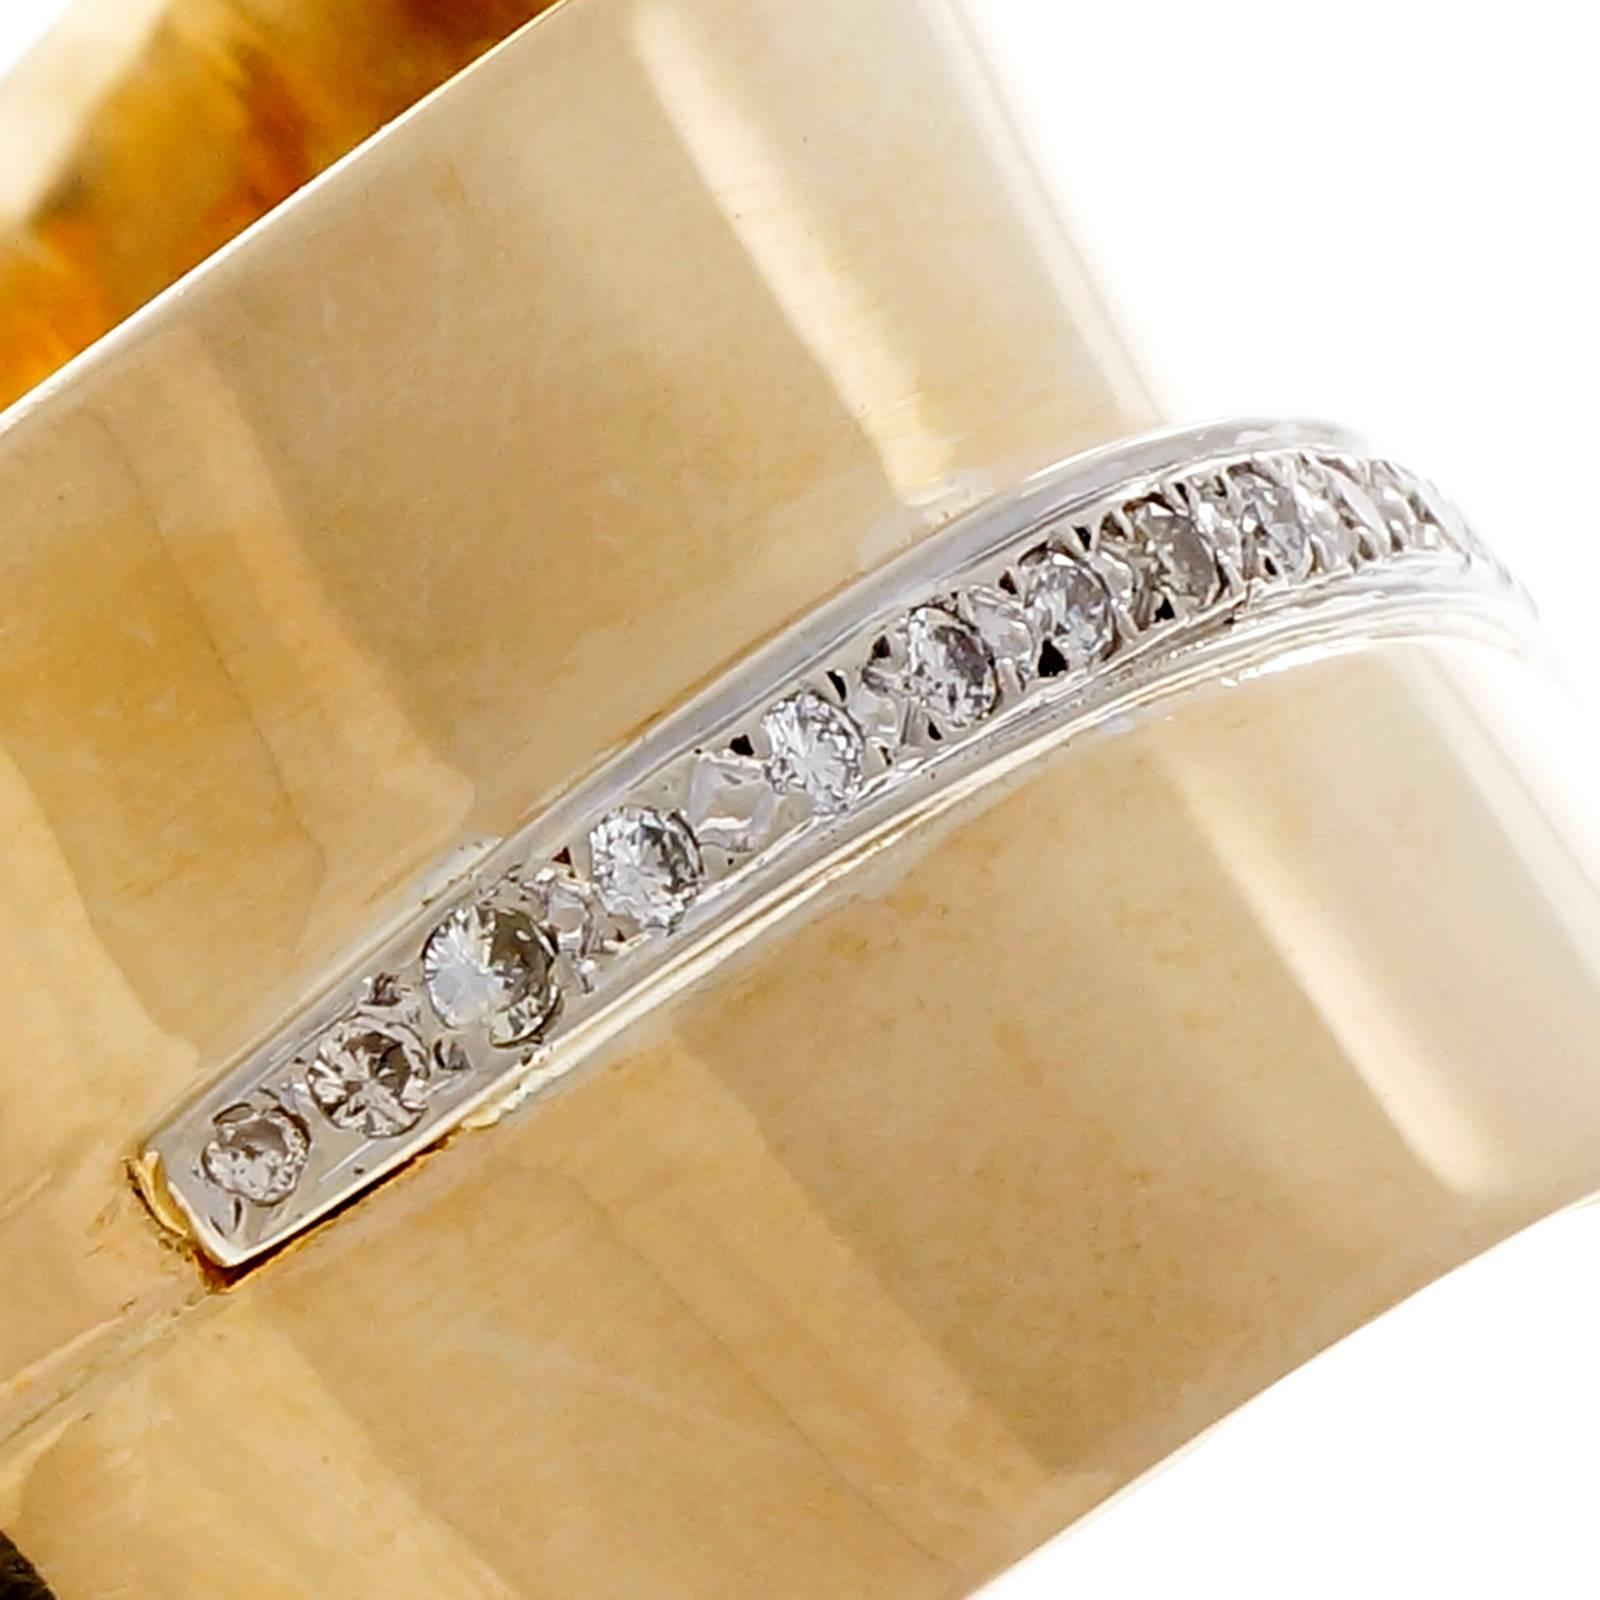 grand bracelet bangle moderniste des années 1950 en or à double ressort et diamants, avec 21 diamants ronds en or jaune et blanc 14k.  Convient à des poignets allant jusqu'à 7,5. 

21 diamants ronds, poids total approx. 0,63 ct, H, VS2 - SI1
or